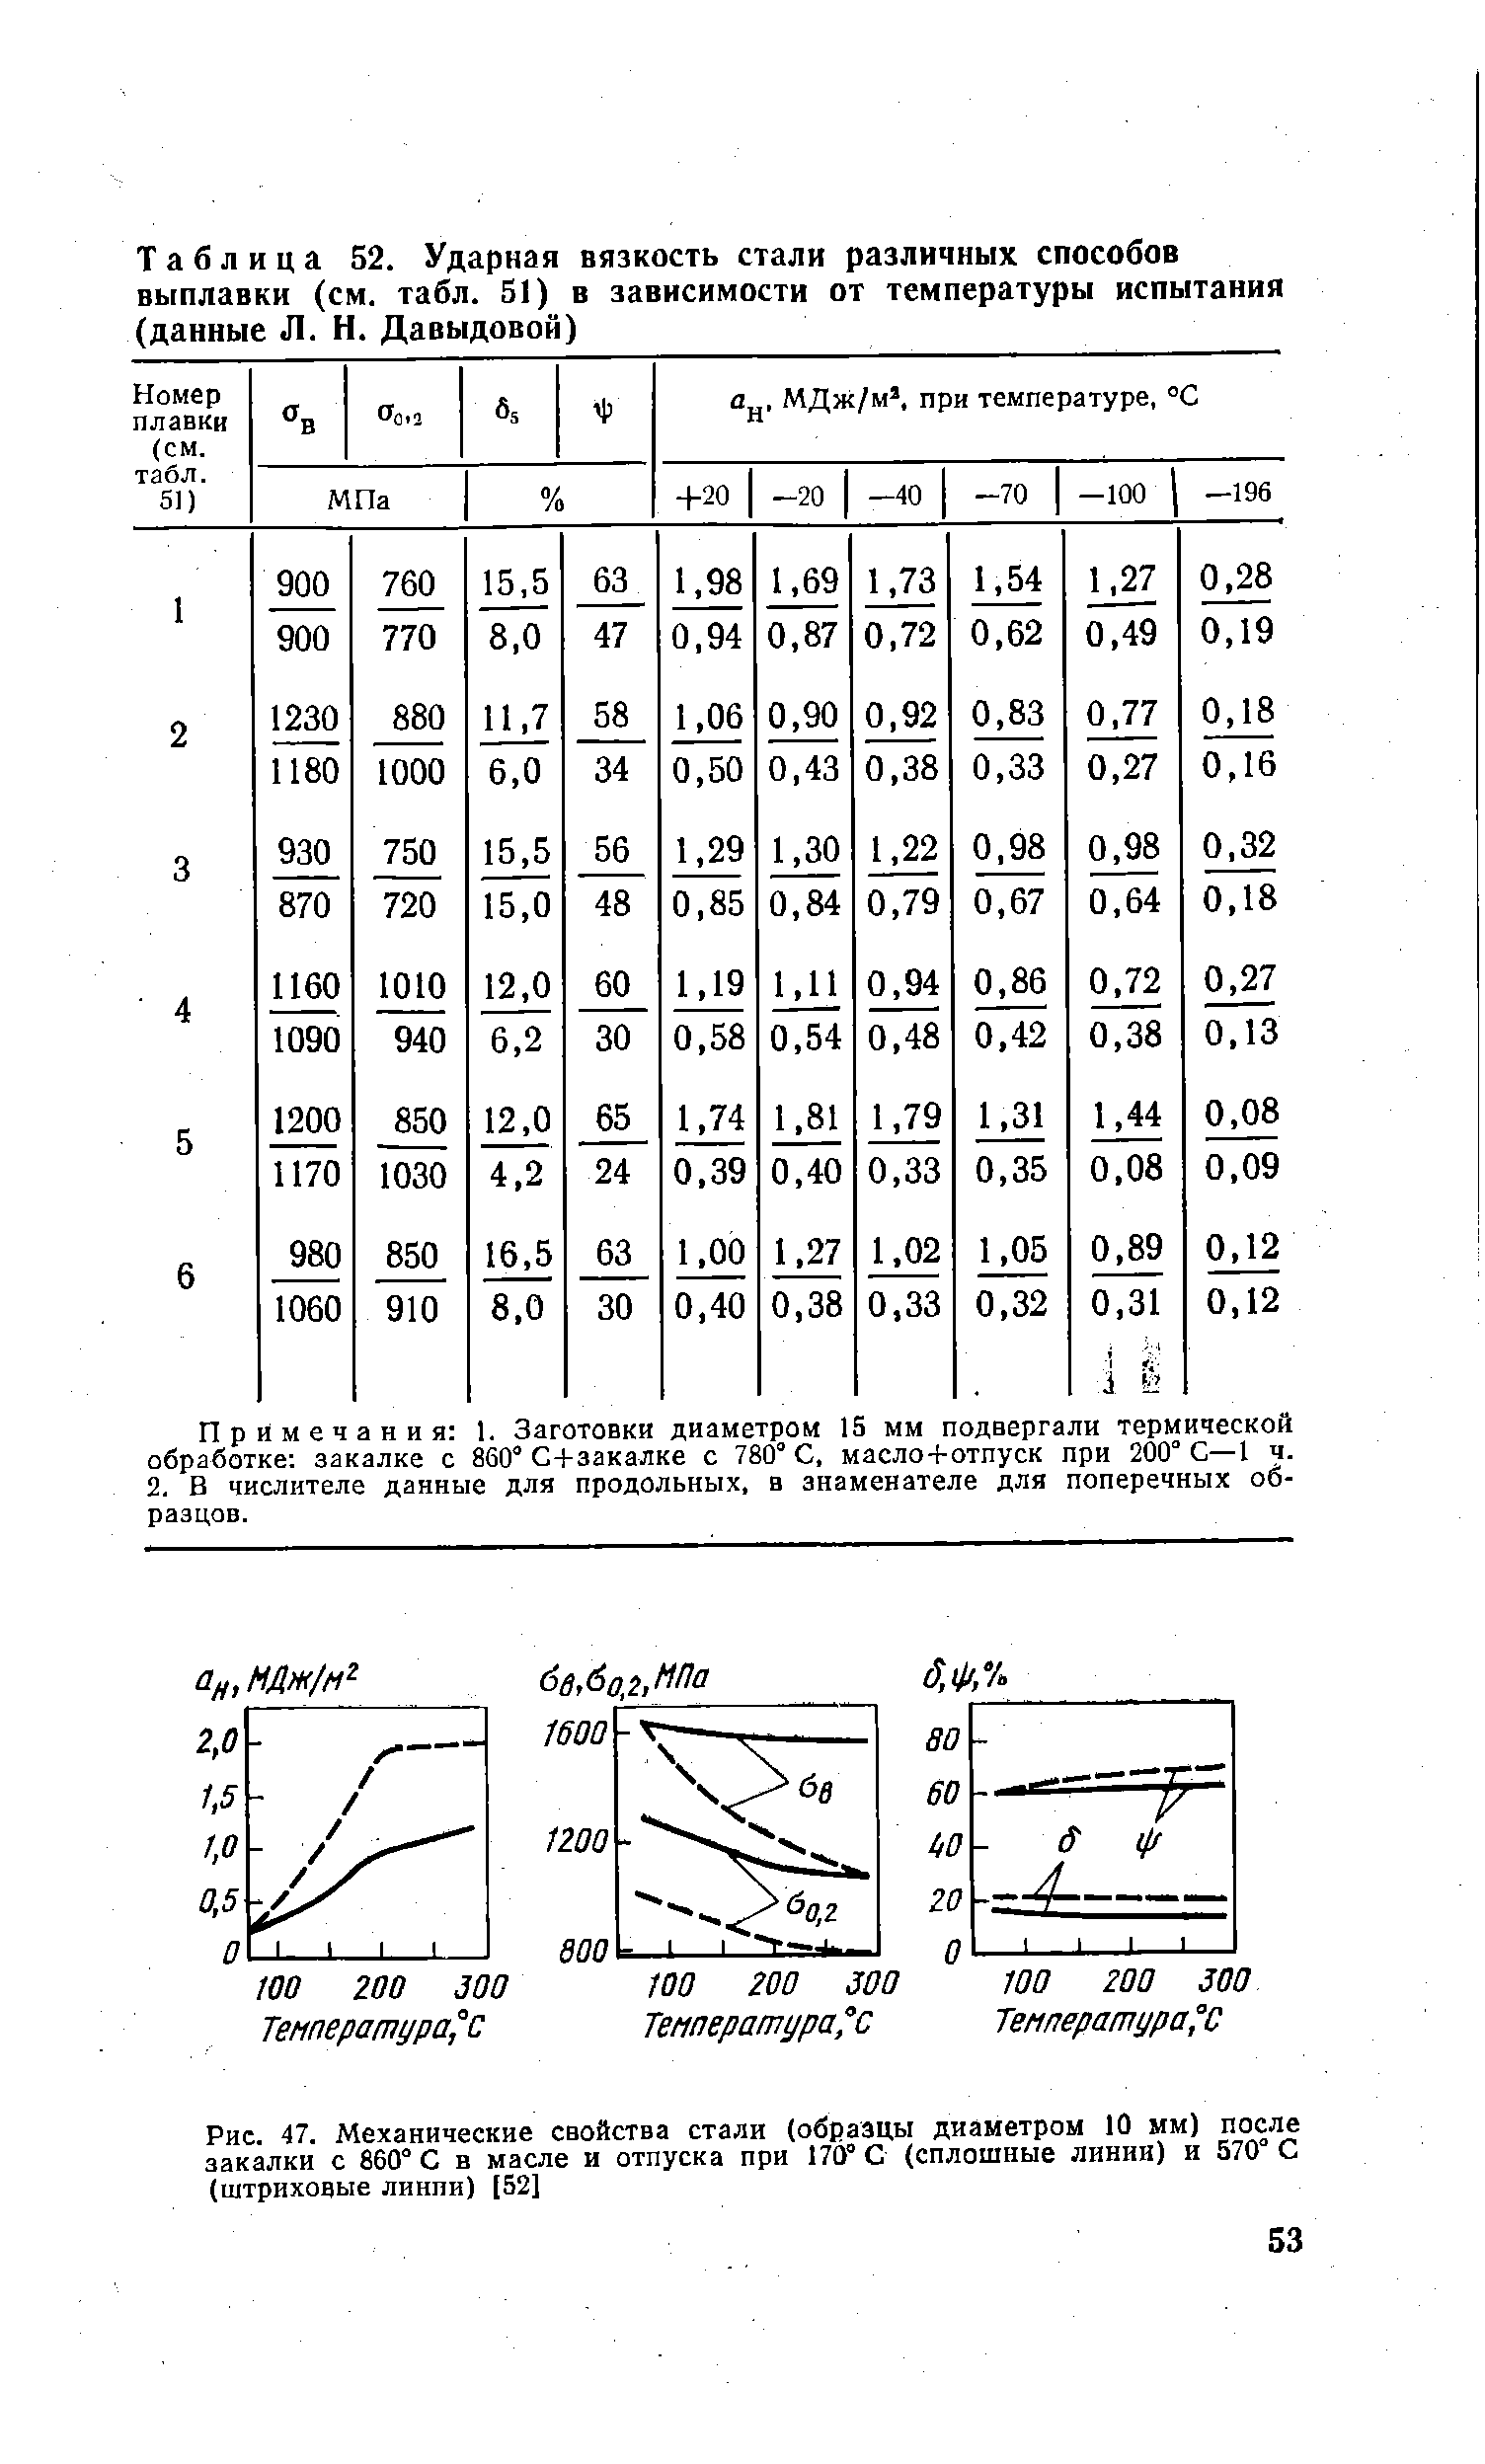 Таблица 52. <a href="/info/4821">Ударная вязкость</a> стали различных способов выплавки (см. табл. 51) в зависимости от <a href="/info/28878">температуры испытания</a> (данные Л. Н. Давыдовой)
